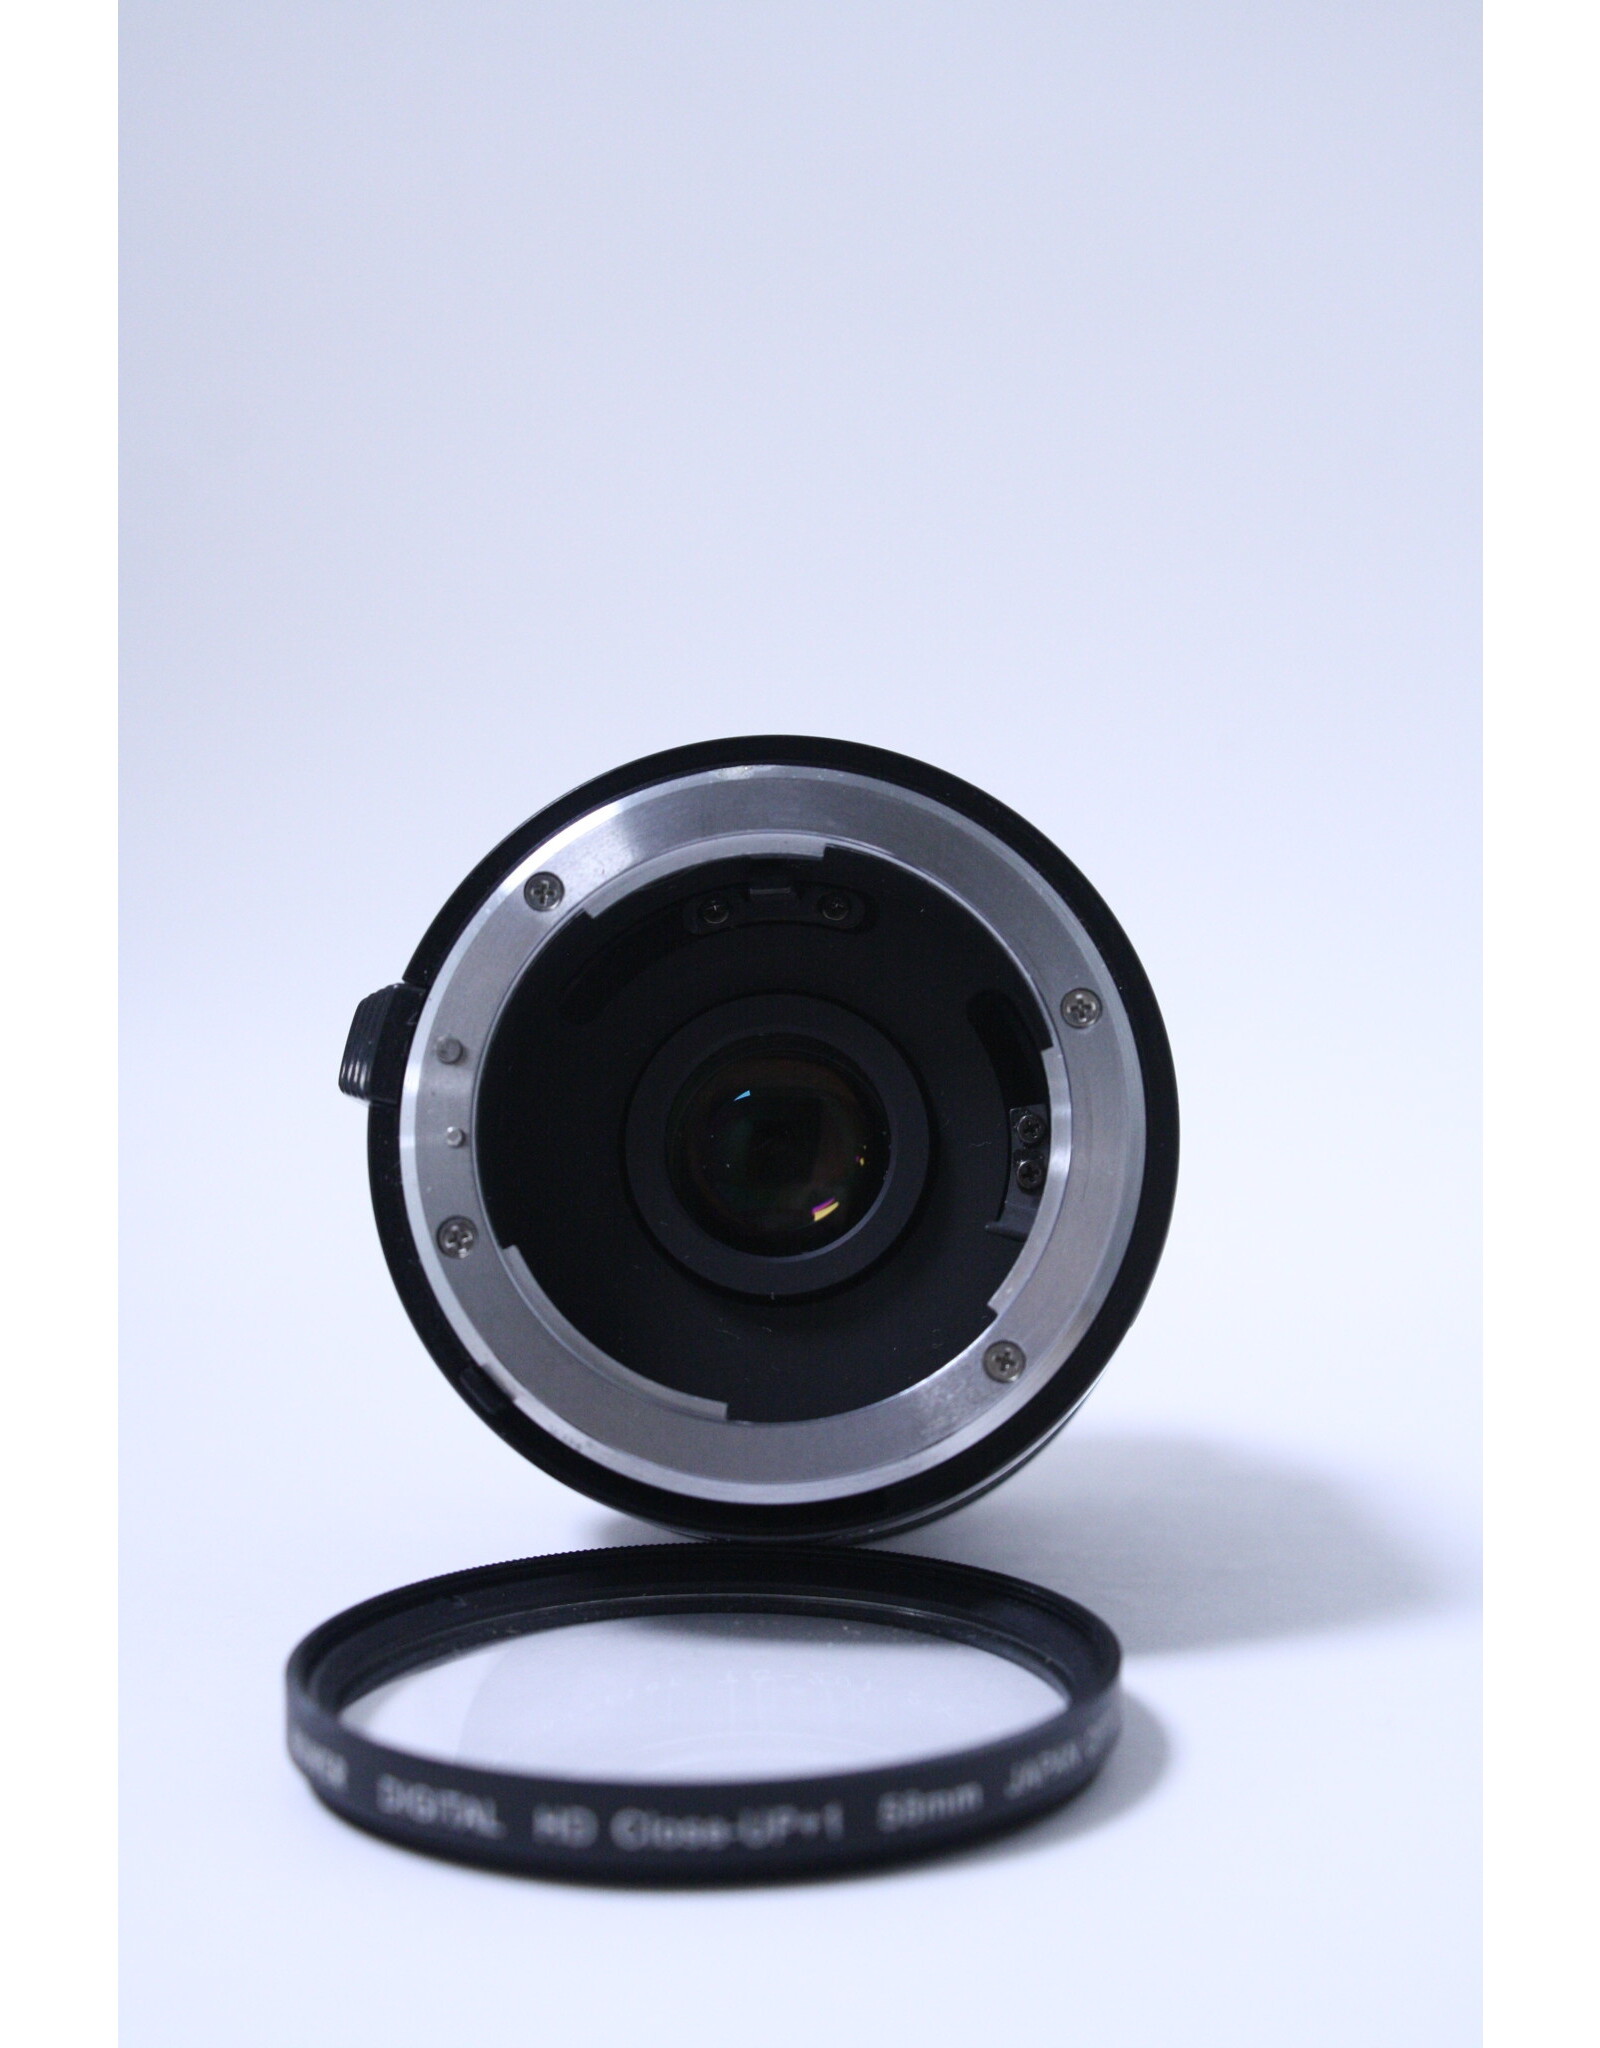 Nikon TC-201 (2.0x) Teleconverter AI-S for Nikon Digital SLR Cameras (Pre-owned)